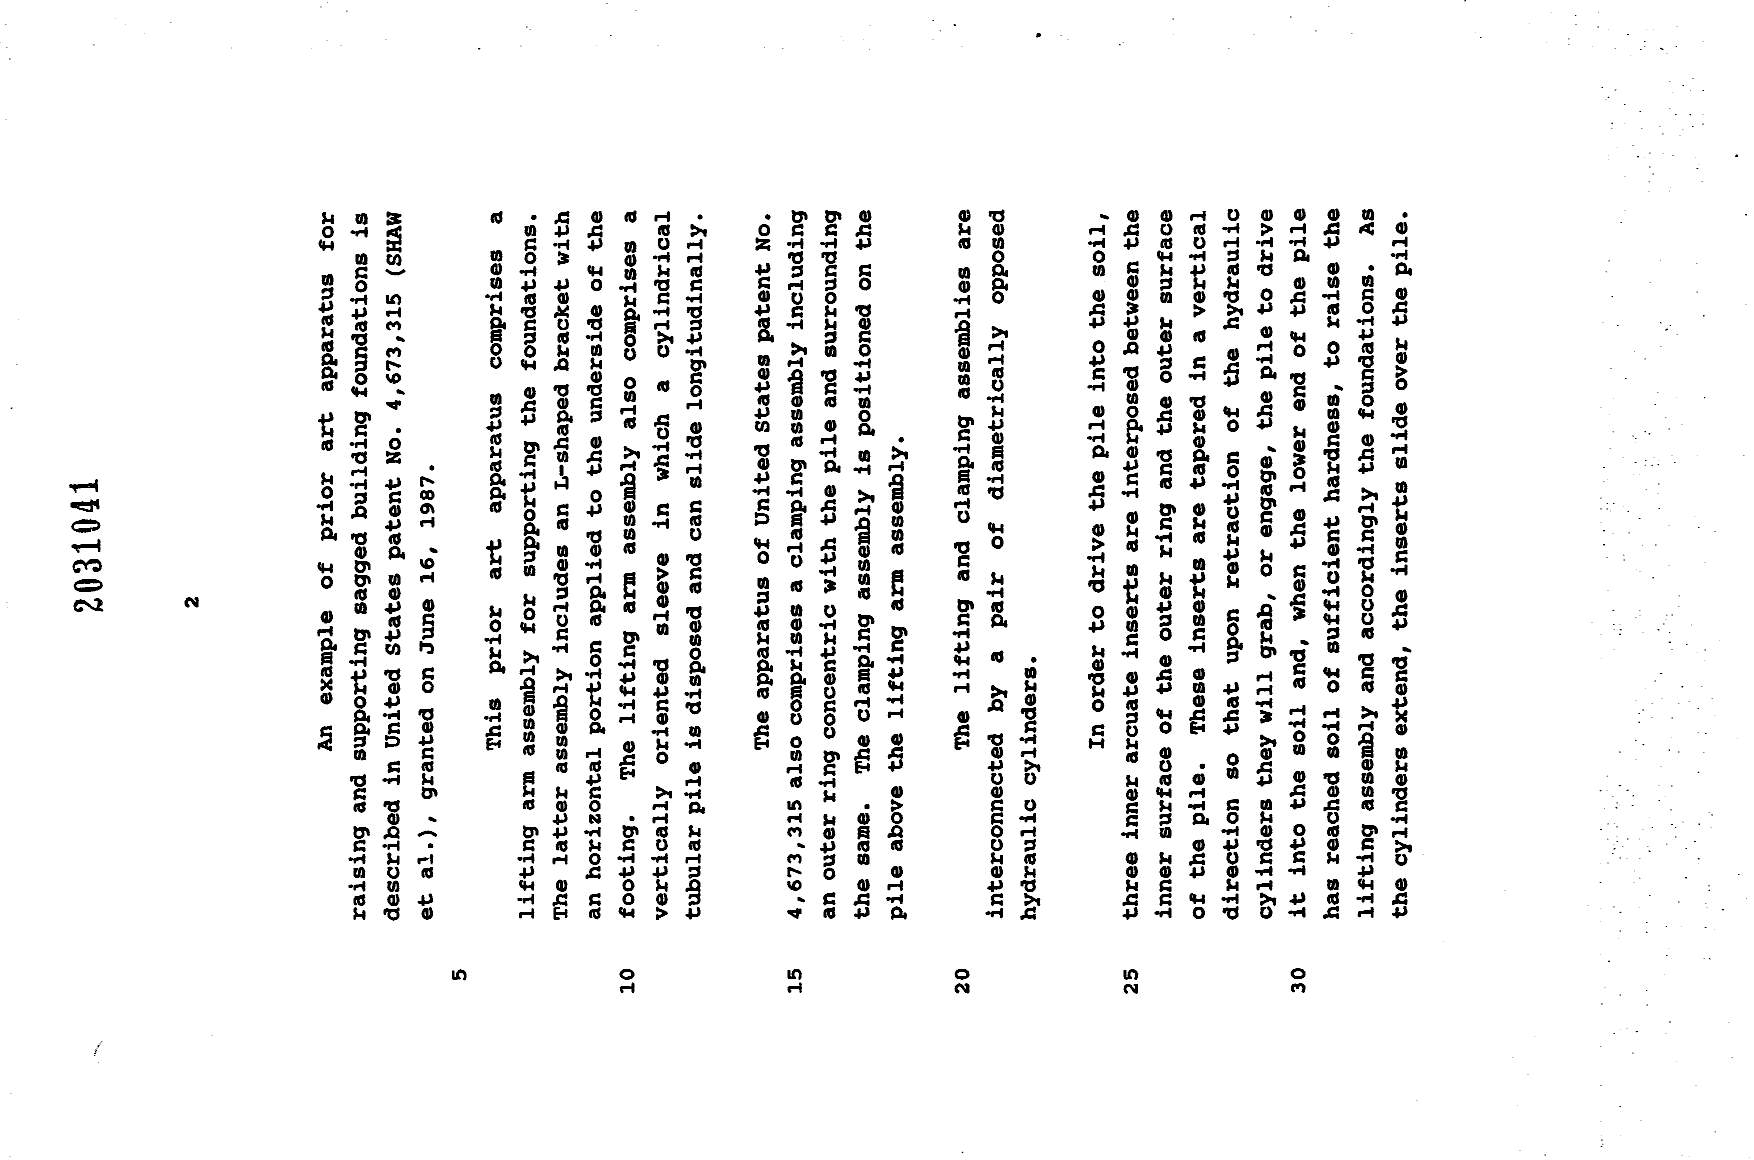 Document de brevet canadien 2031041. Description 19931226. Image 2 de 14